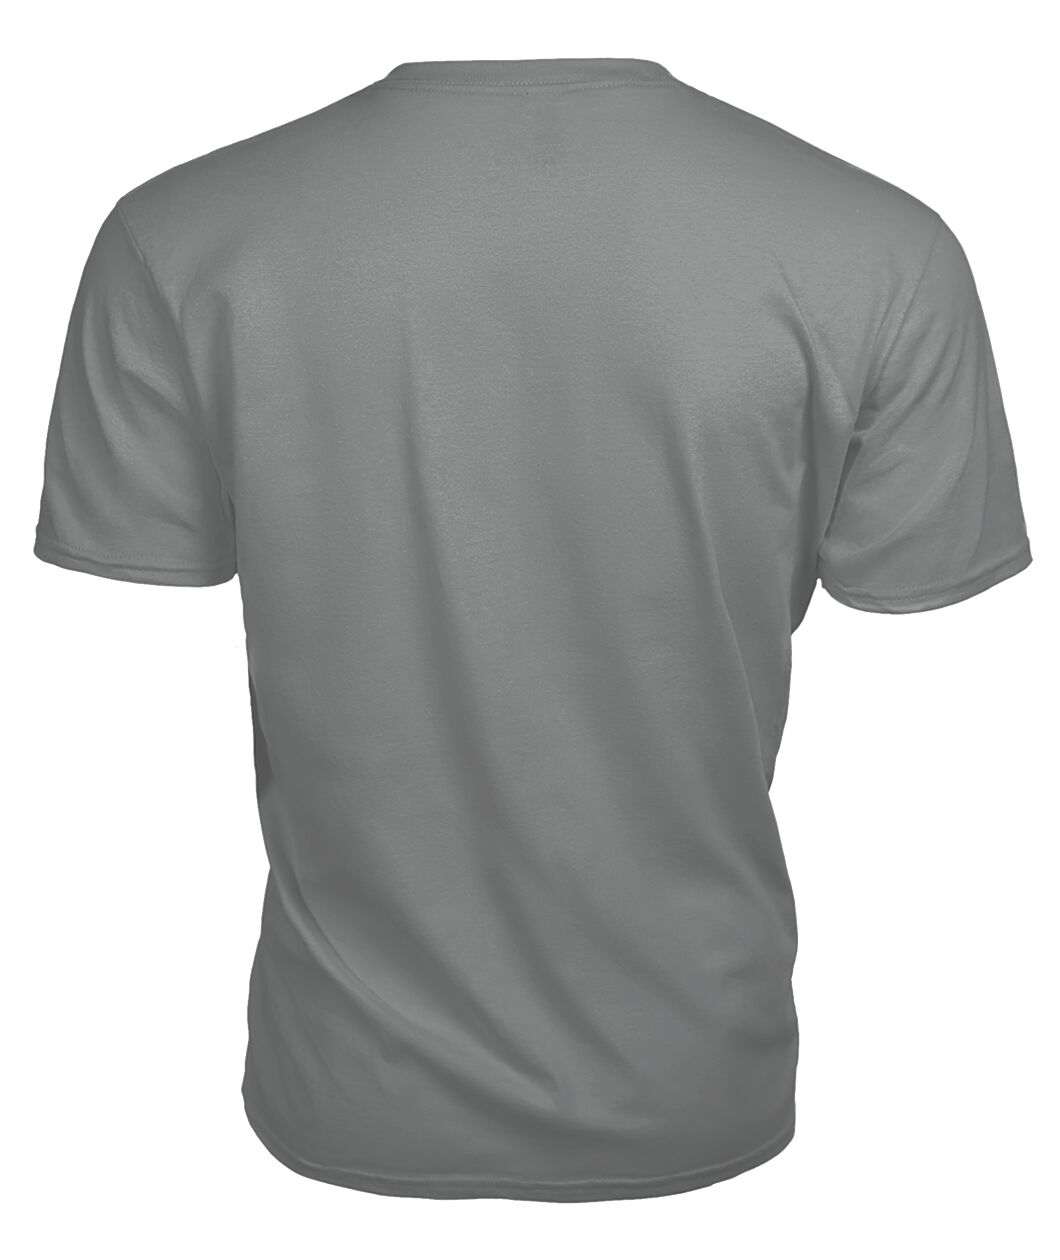 Ainslie Family Tartan - 2D T-shirt